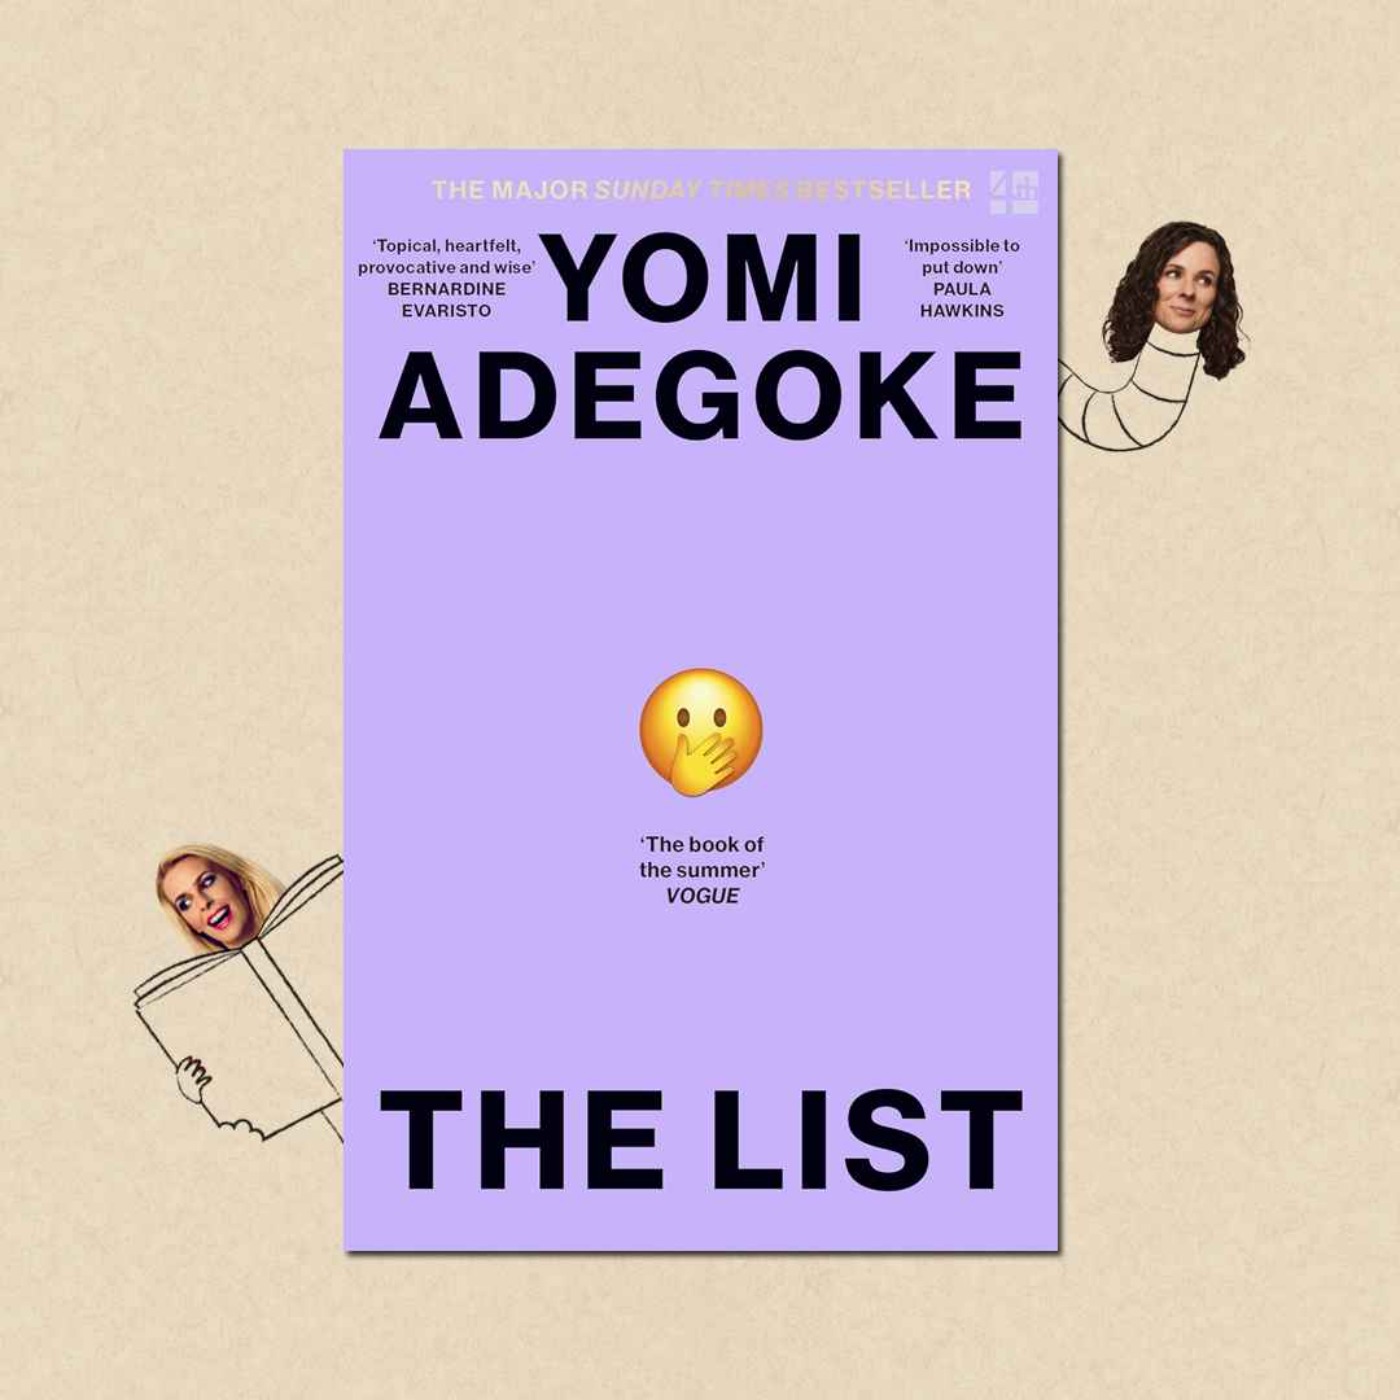 cover art for The List by Yomi Adegoke with Yomi Adegoke